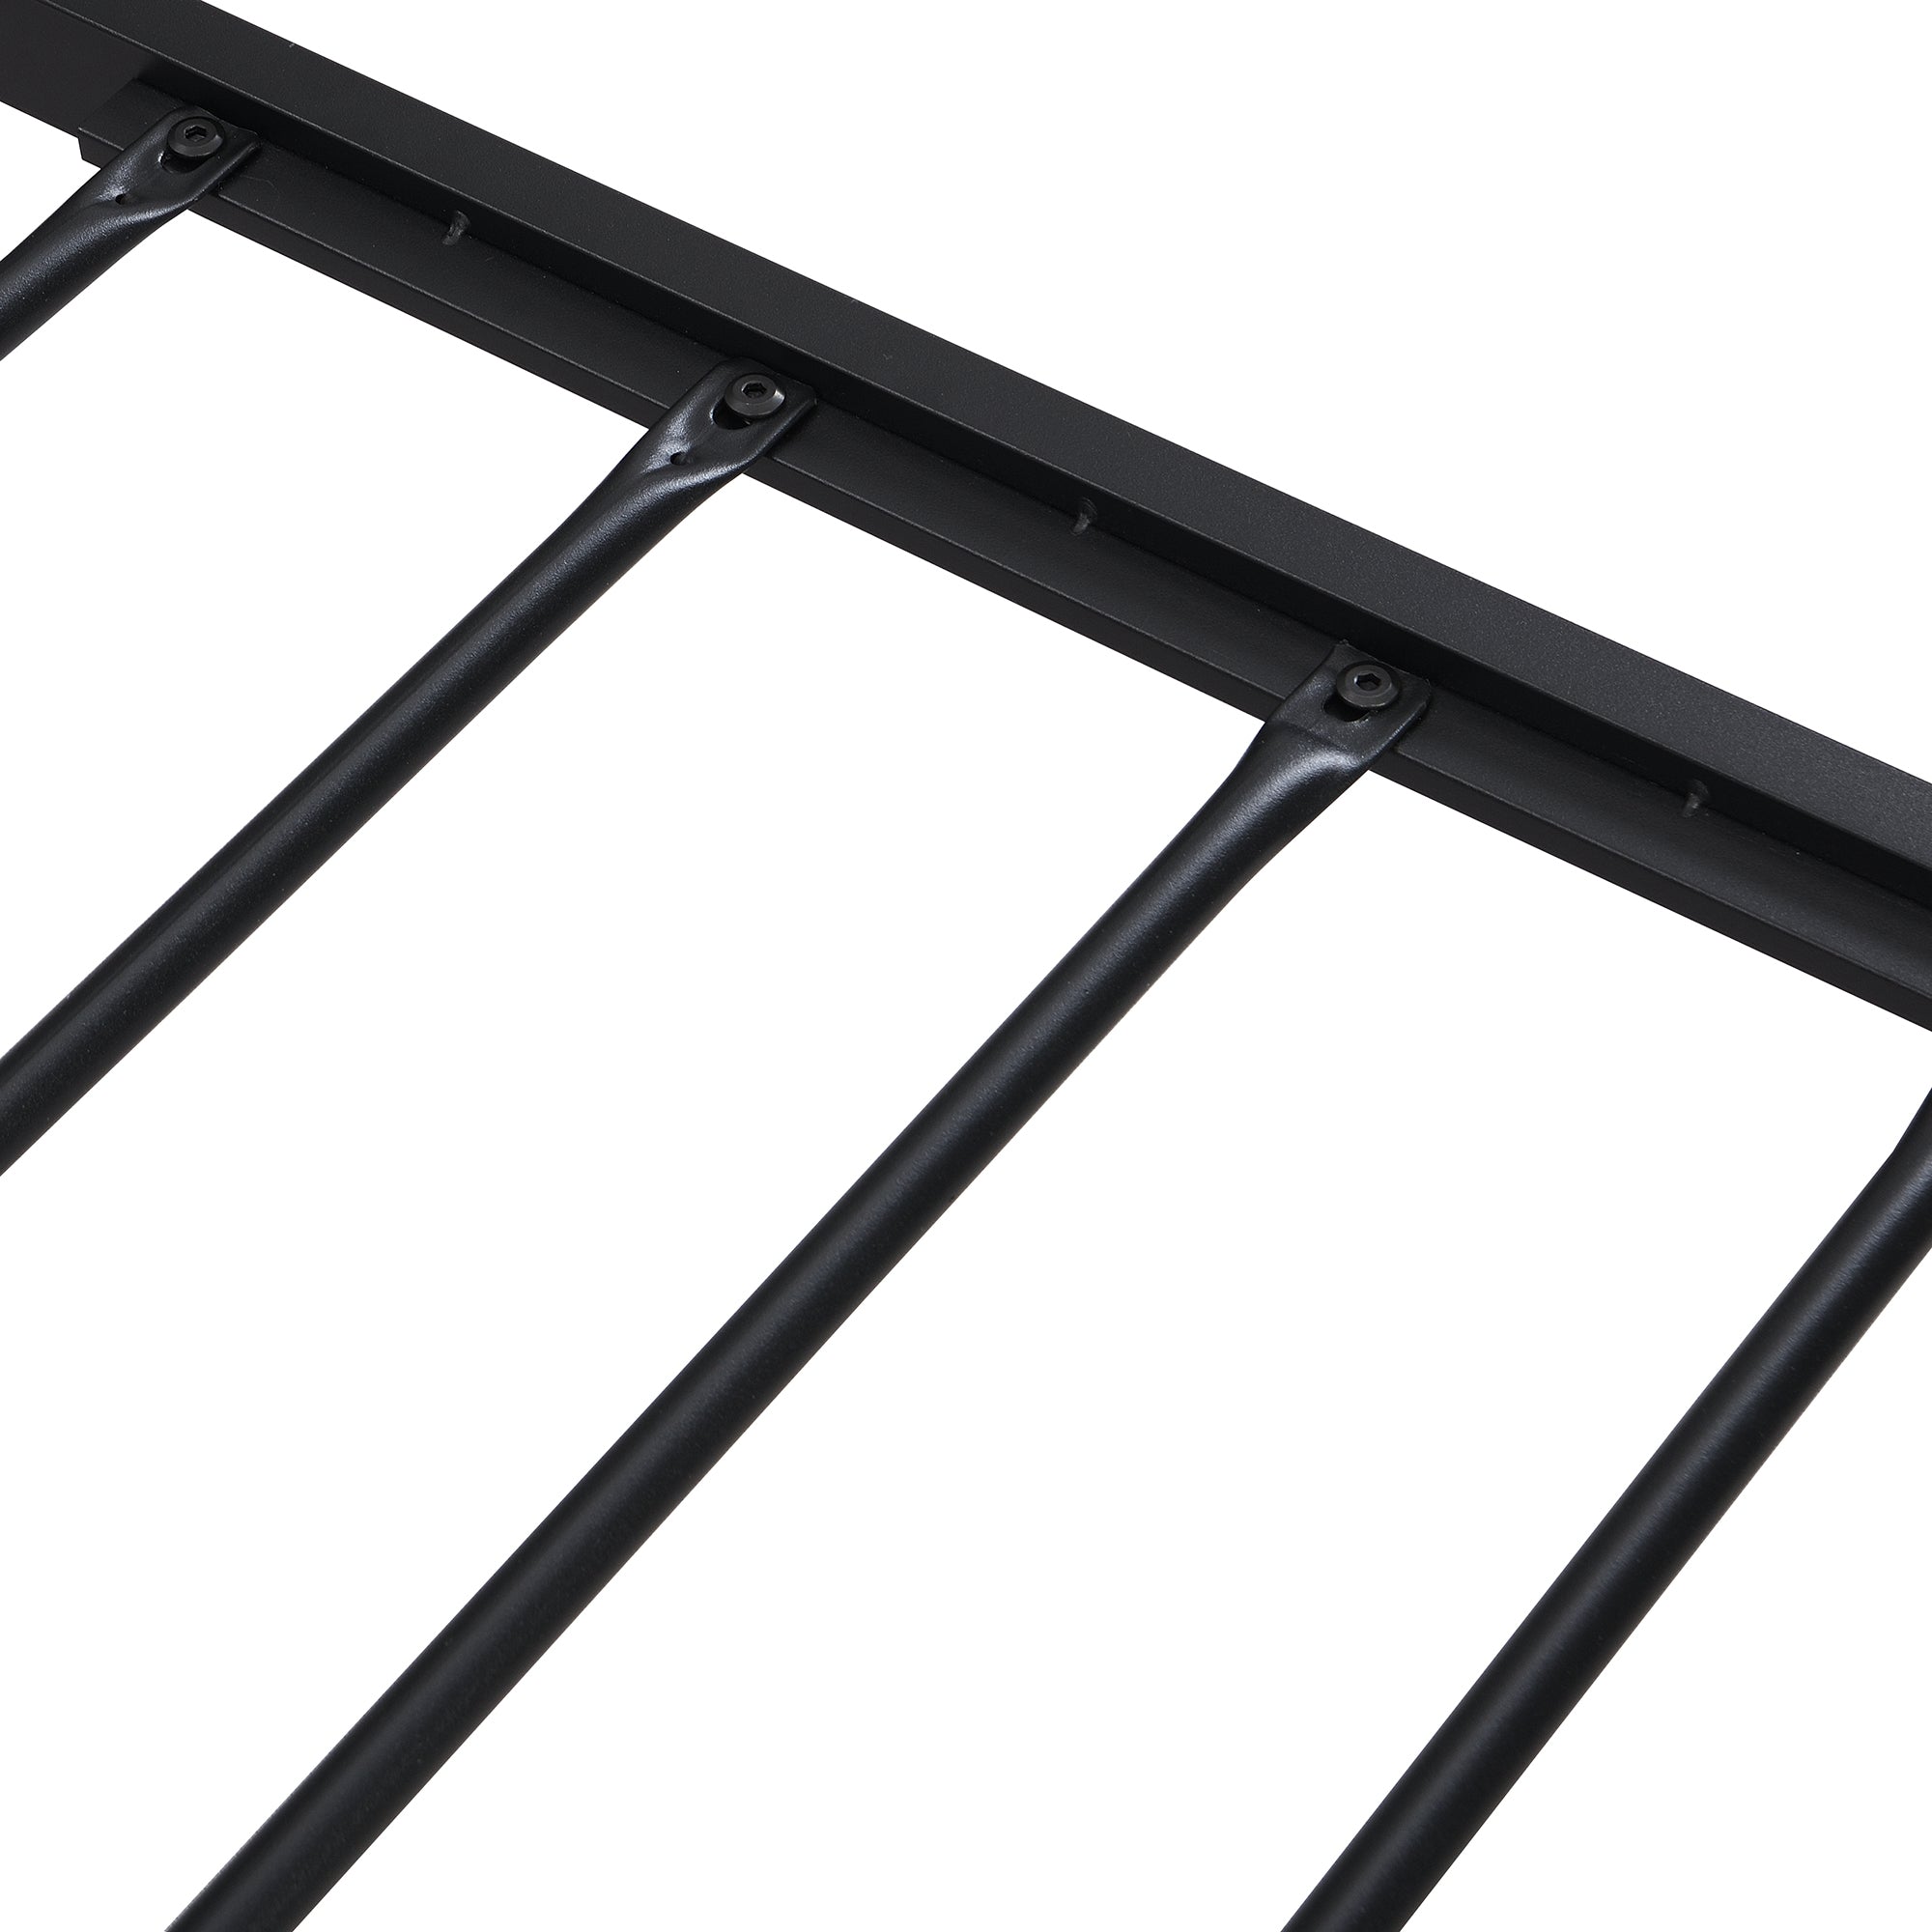 Full Size Metal Platform Bed Frame with Wooden black-metal